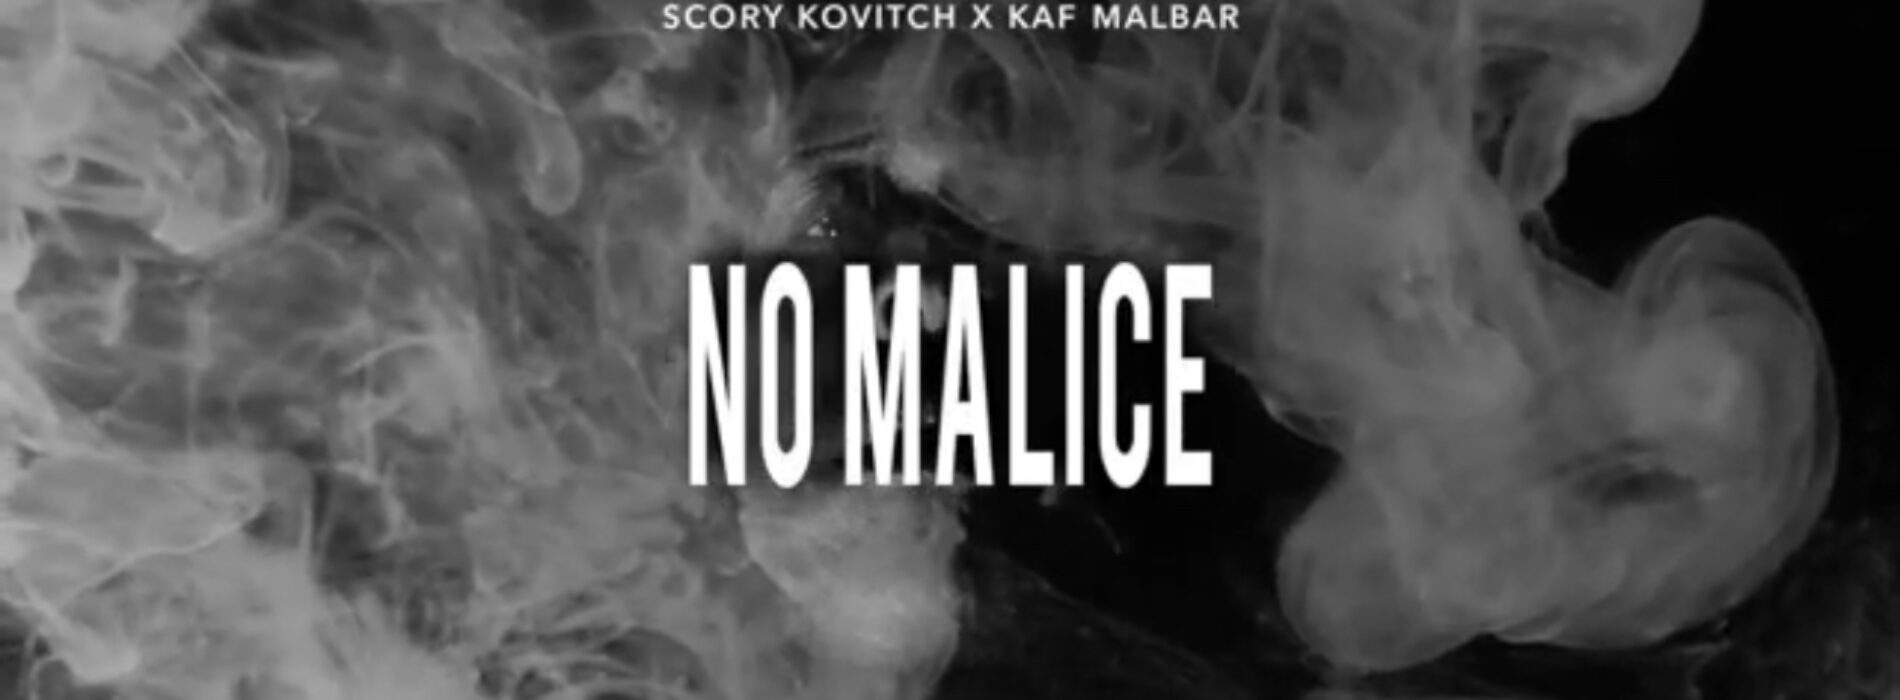 Scory kovitch feat KAF MALBAR – « No malice » – Mars 2022